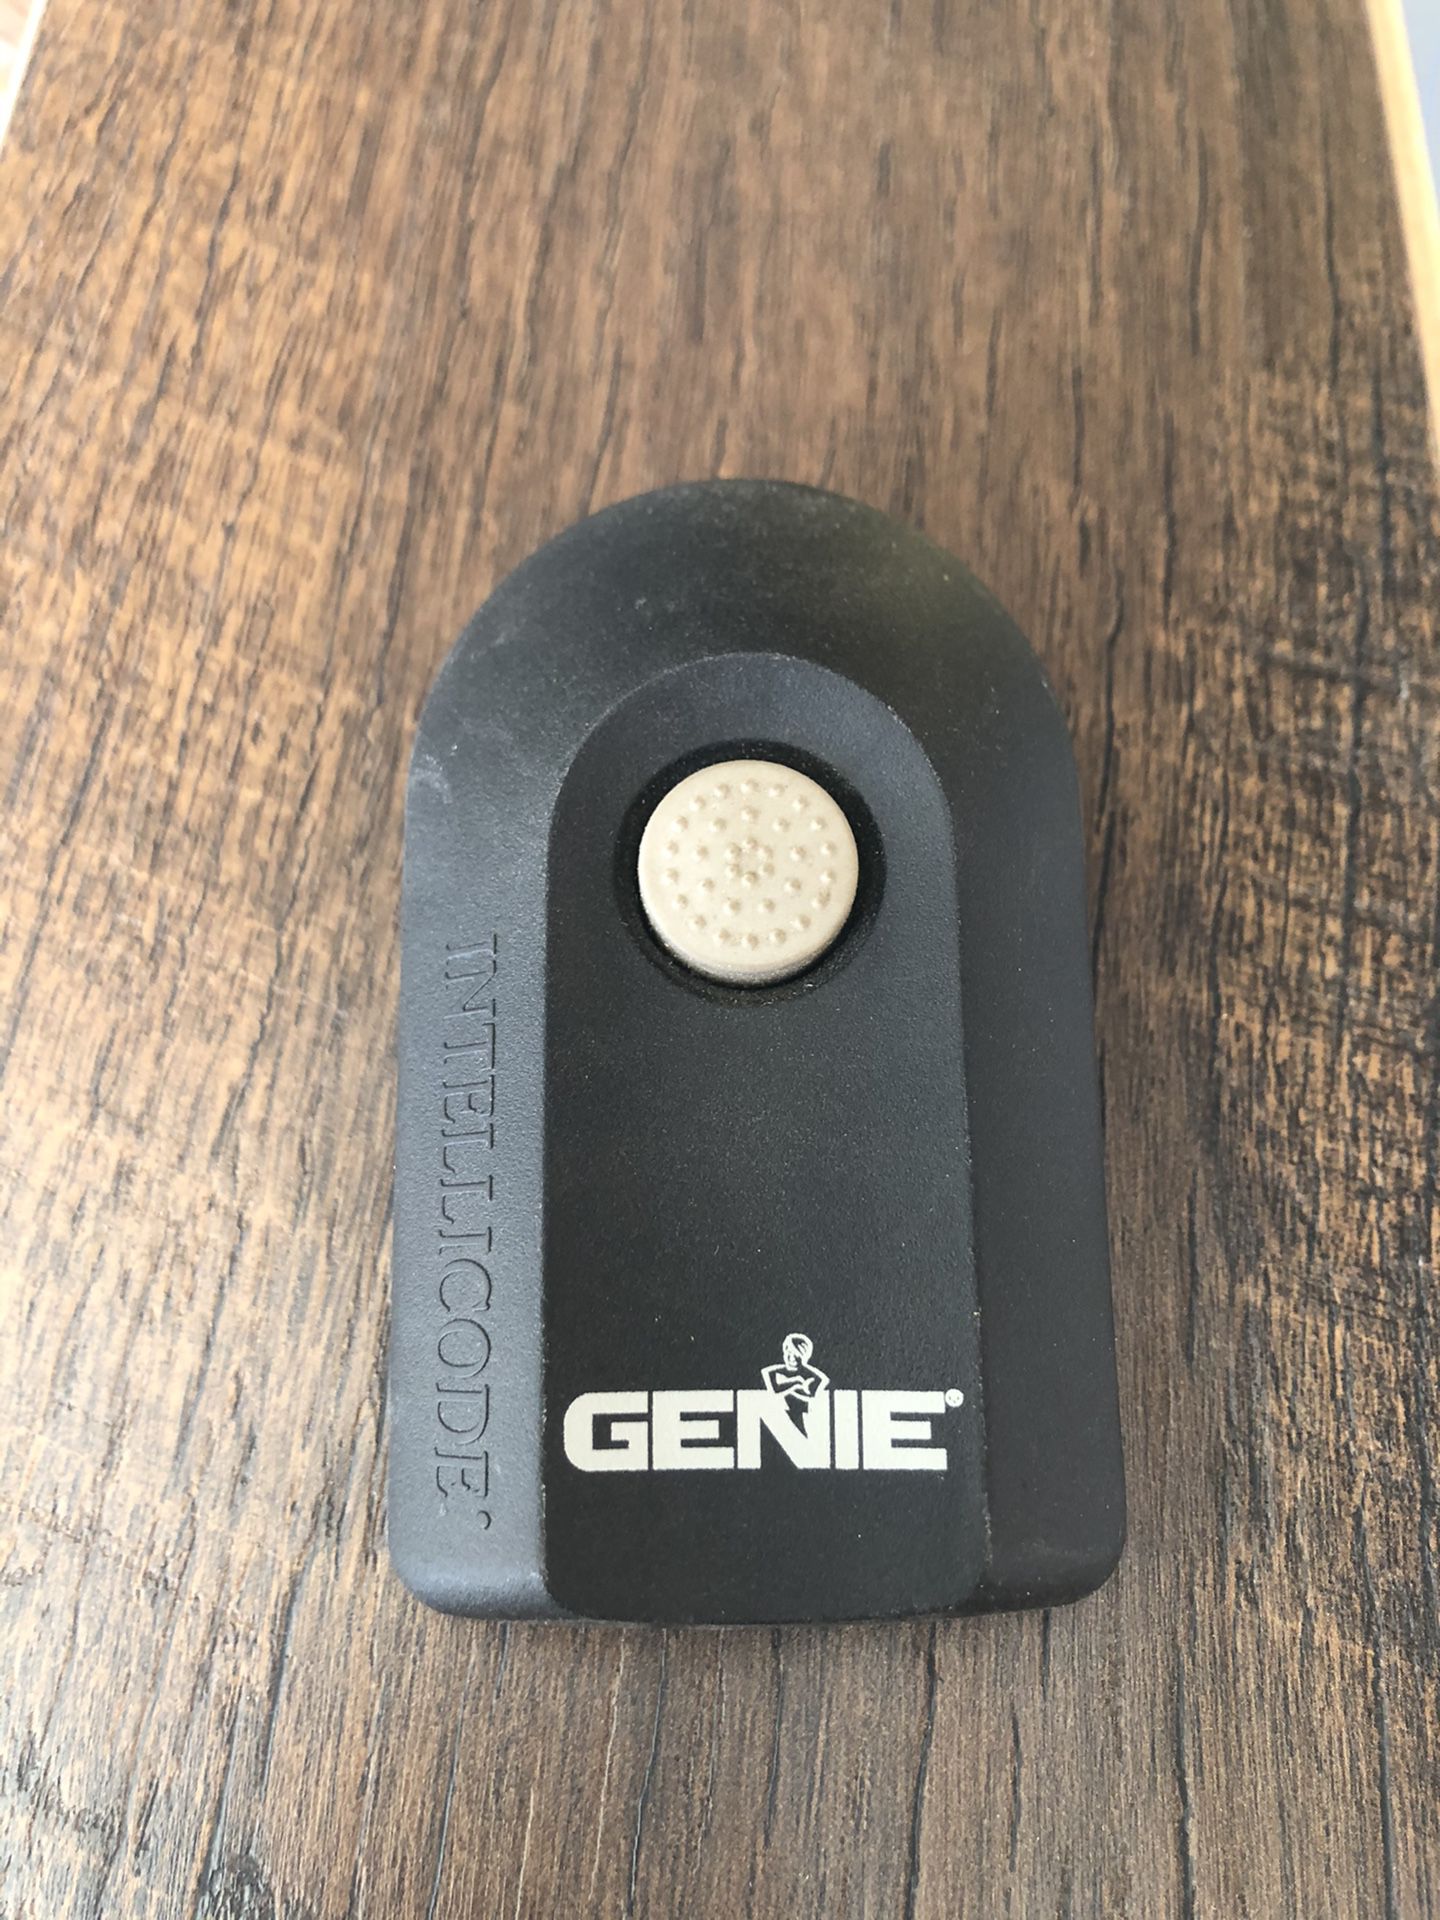 Genie Intellicode remote